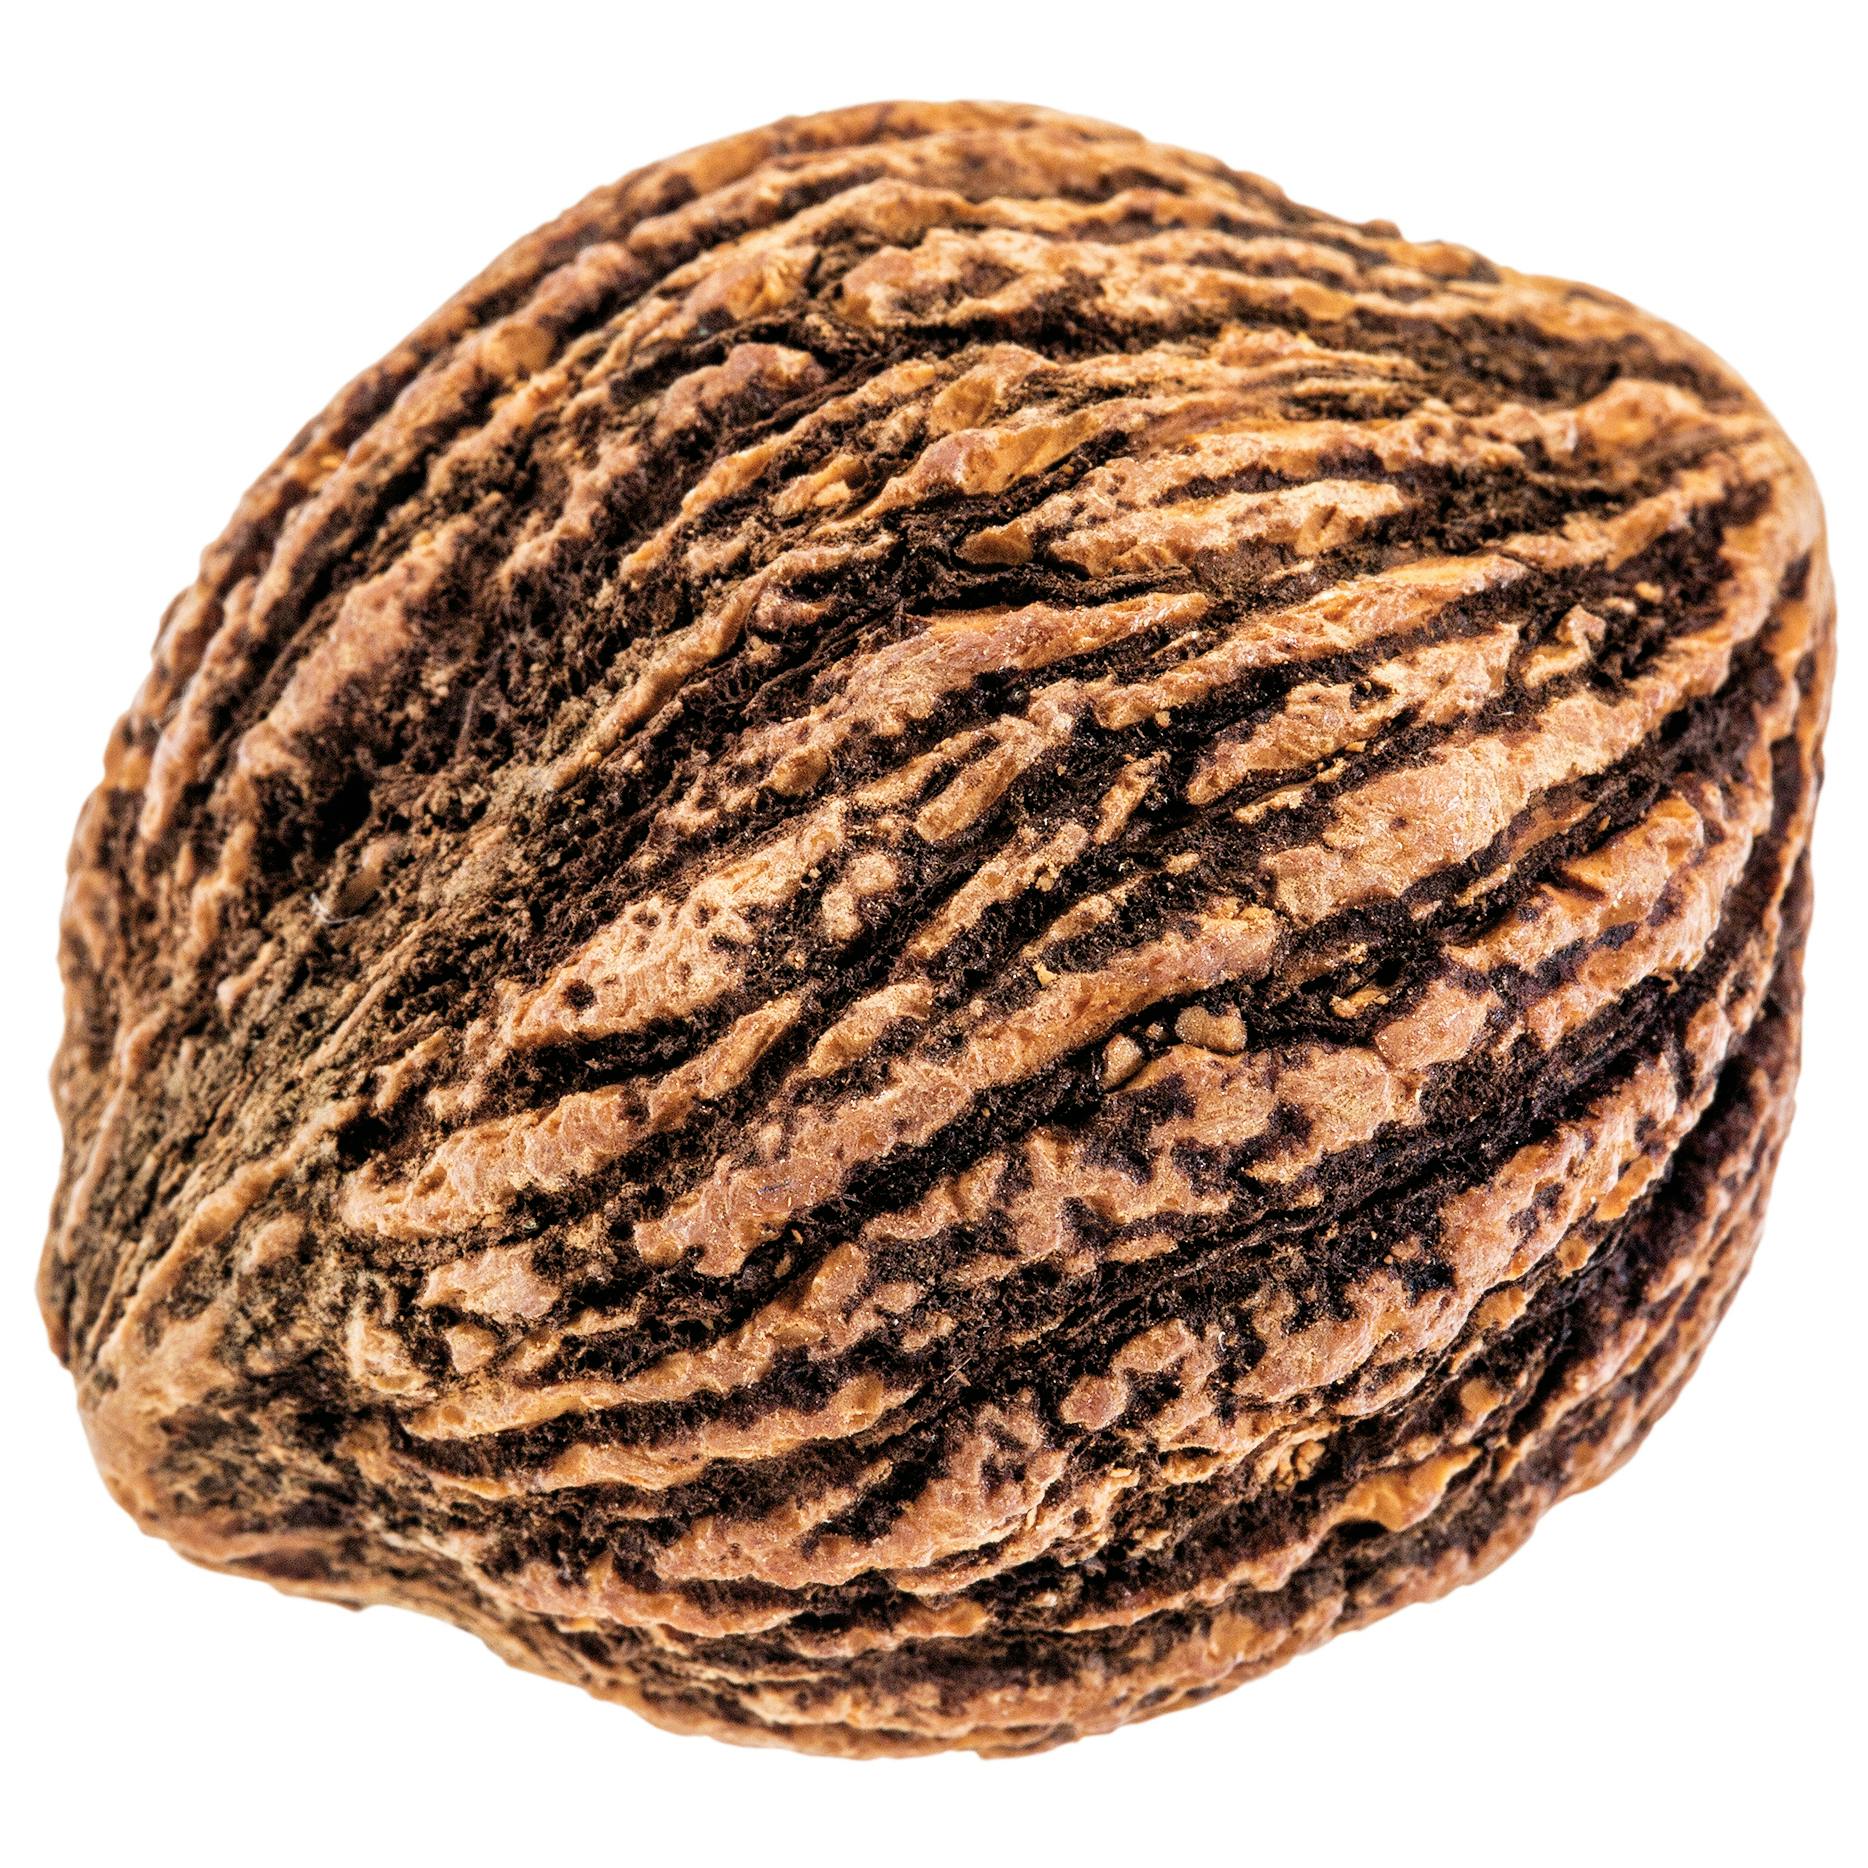 A black walnut